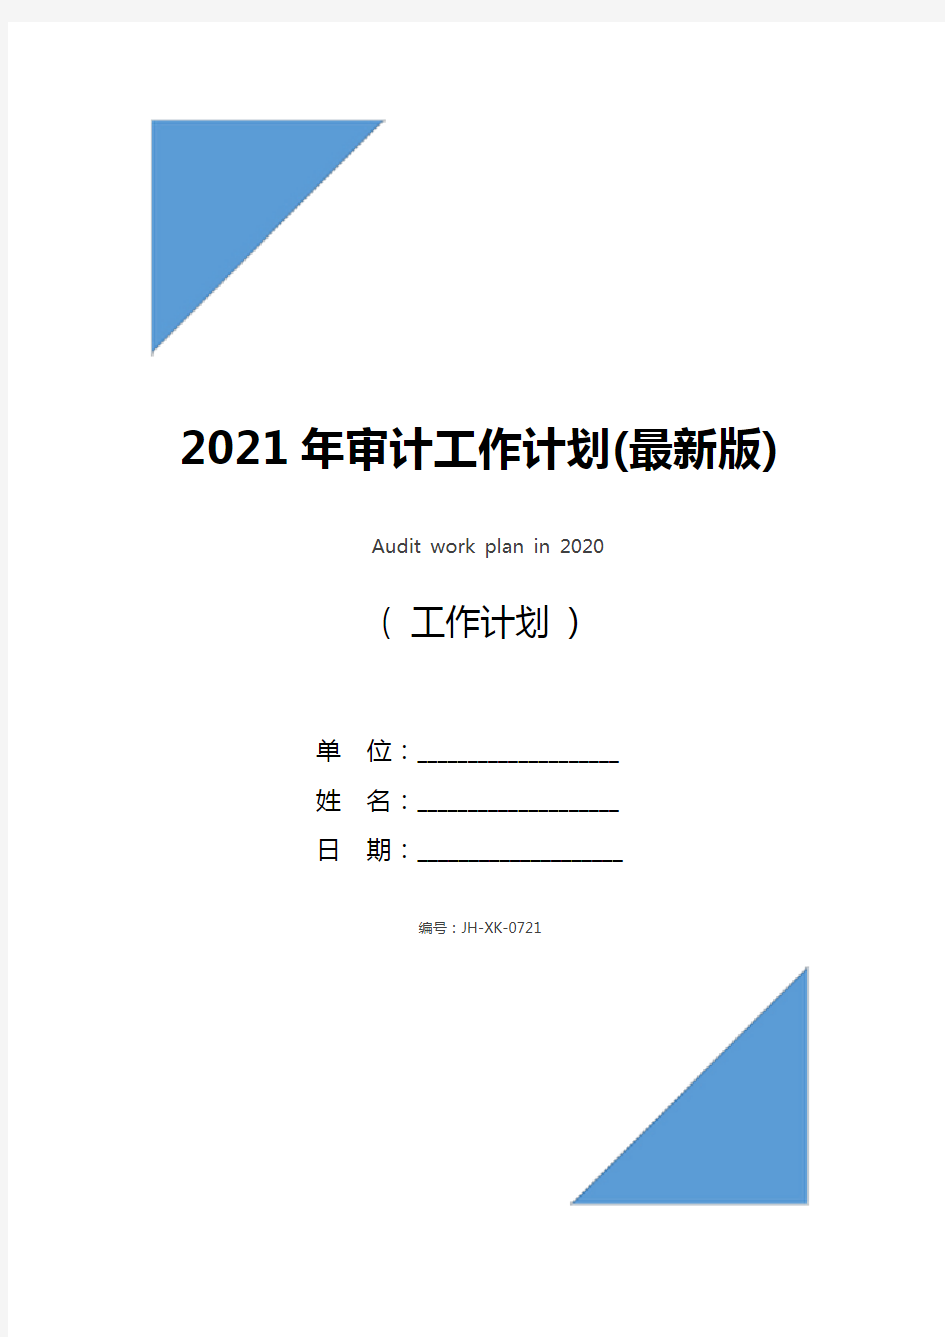 2021年审计工作计划(最新版)